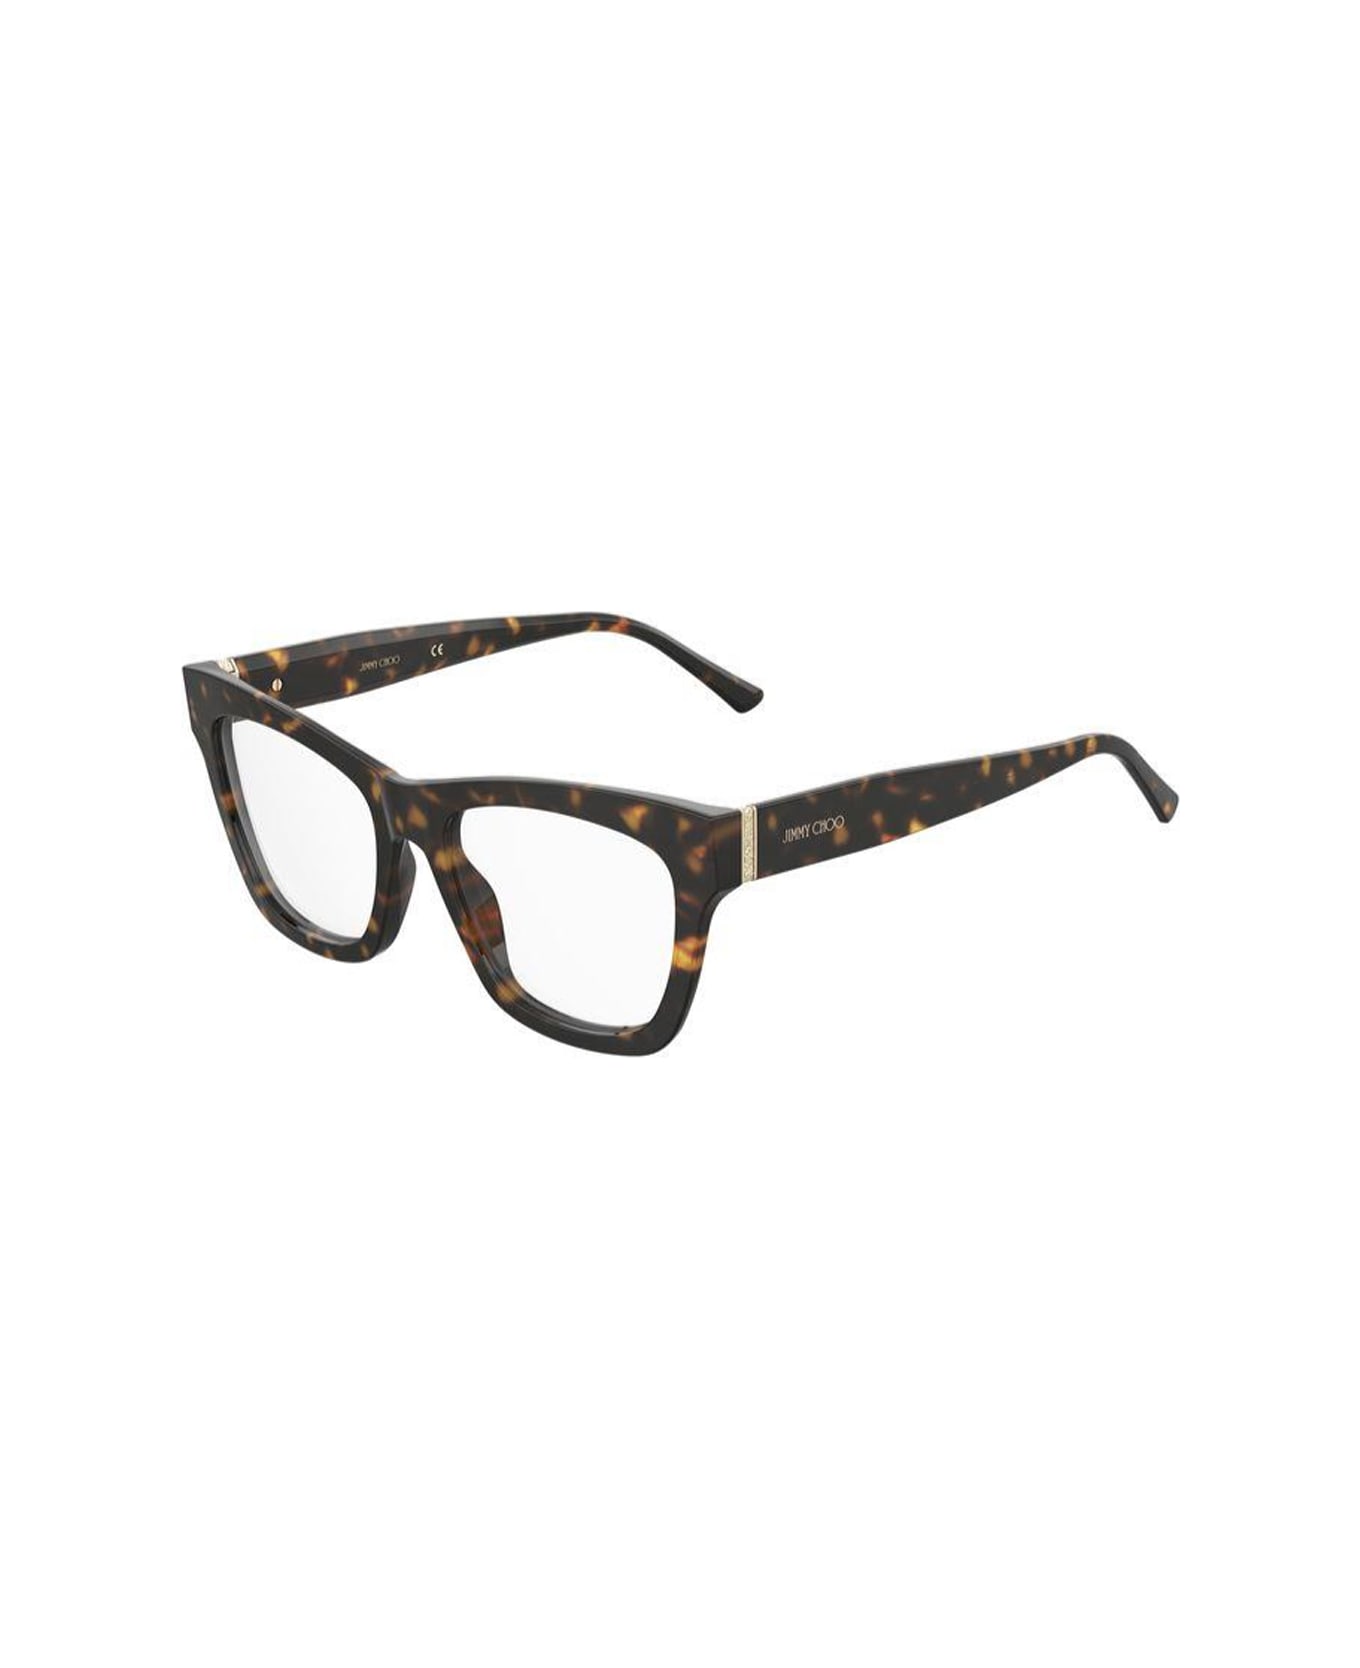 Jimmy Choo Eyewear Jc351 086/18 Glasses - Marrone